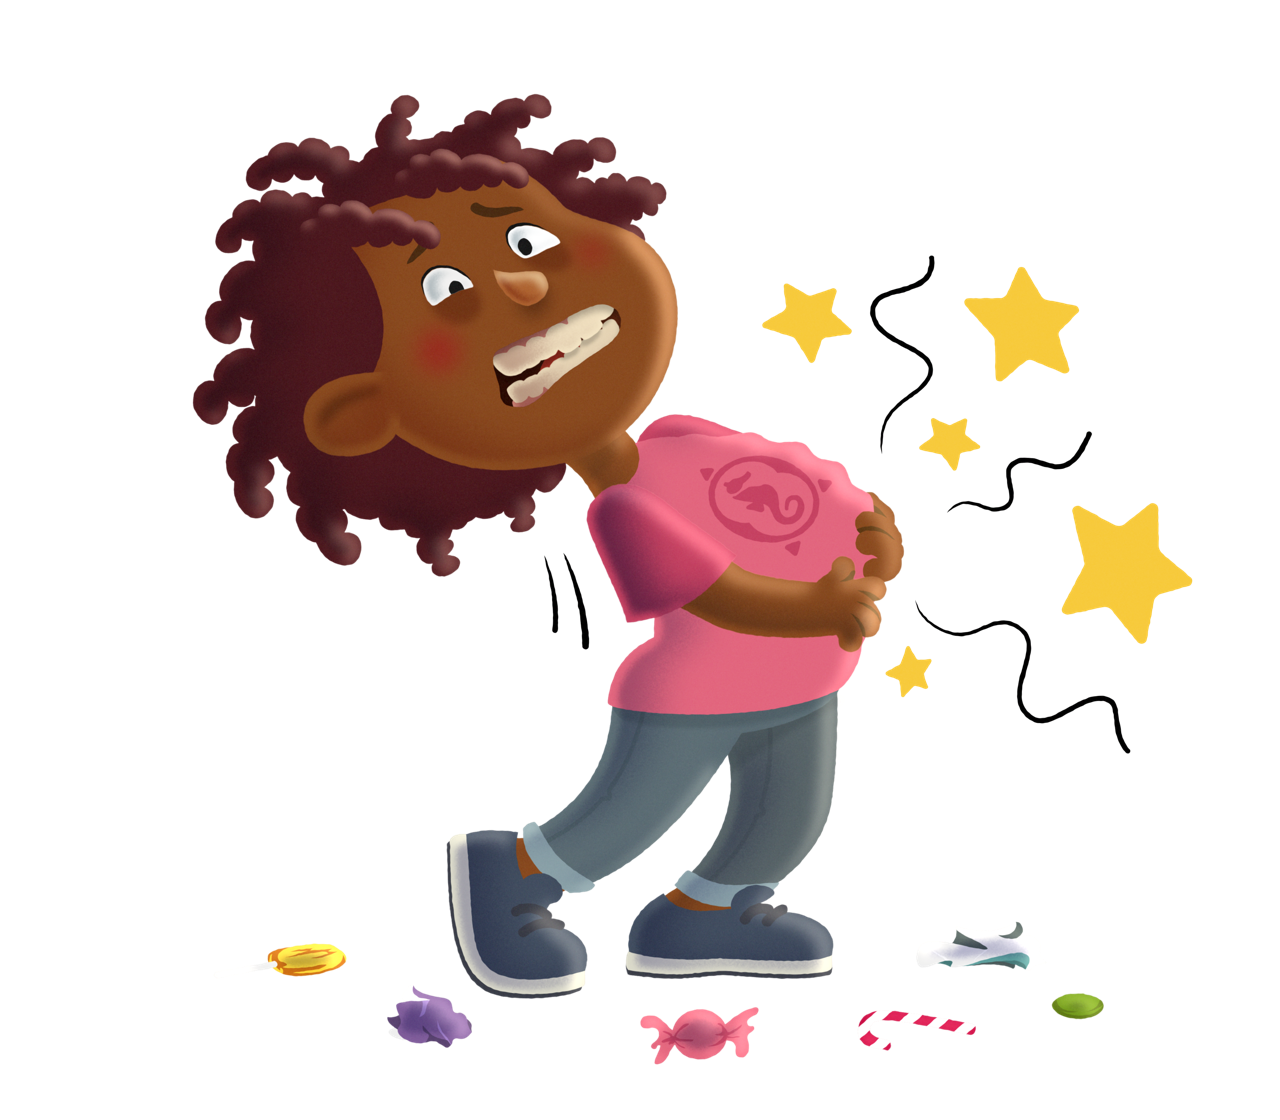 Ein illustriertes Kind krümmt sich wegen Bauchweh, weil es viele Süßigkeiten gegessen hat.